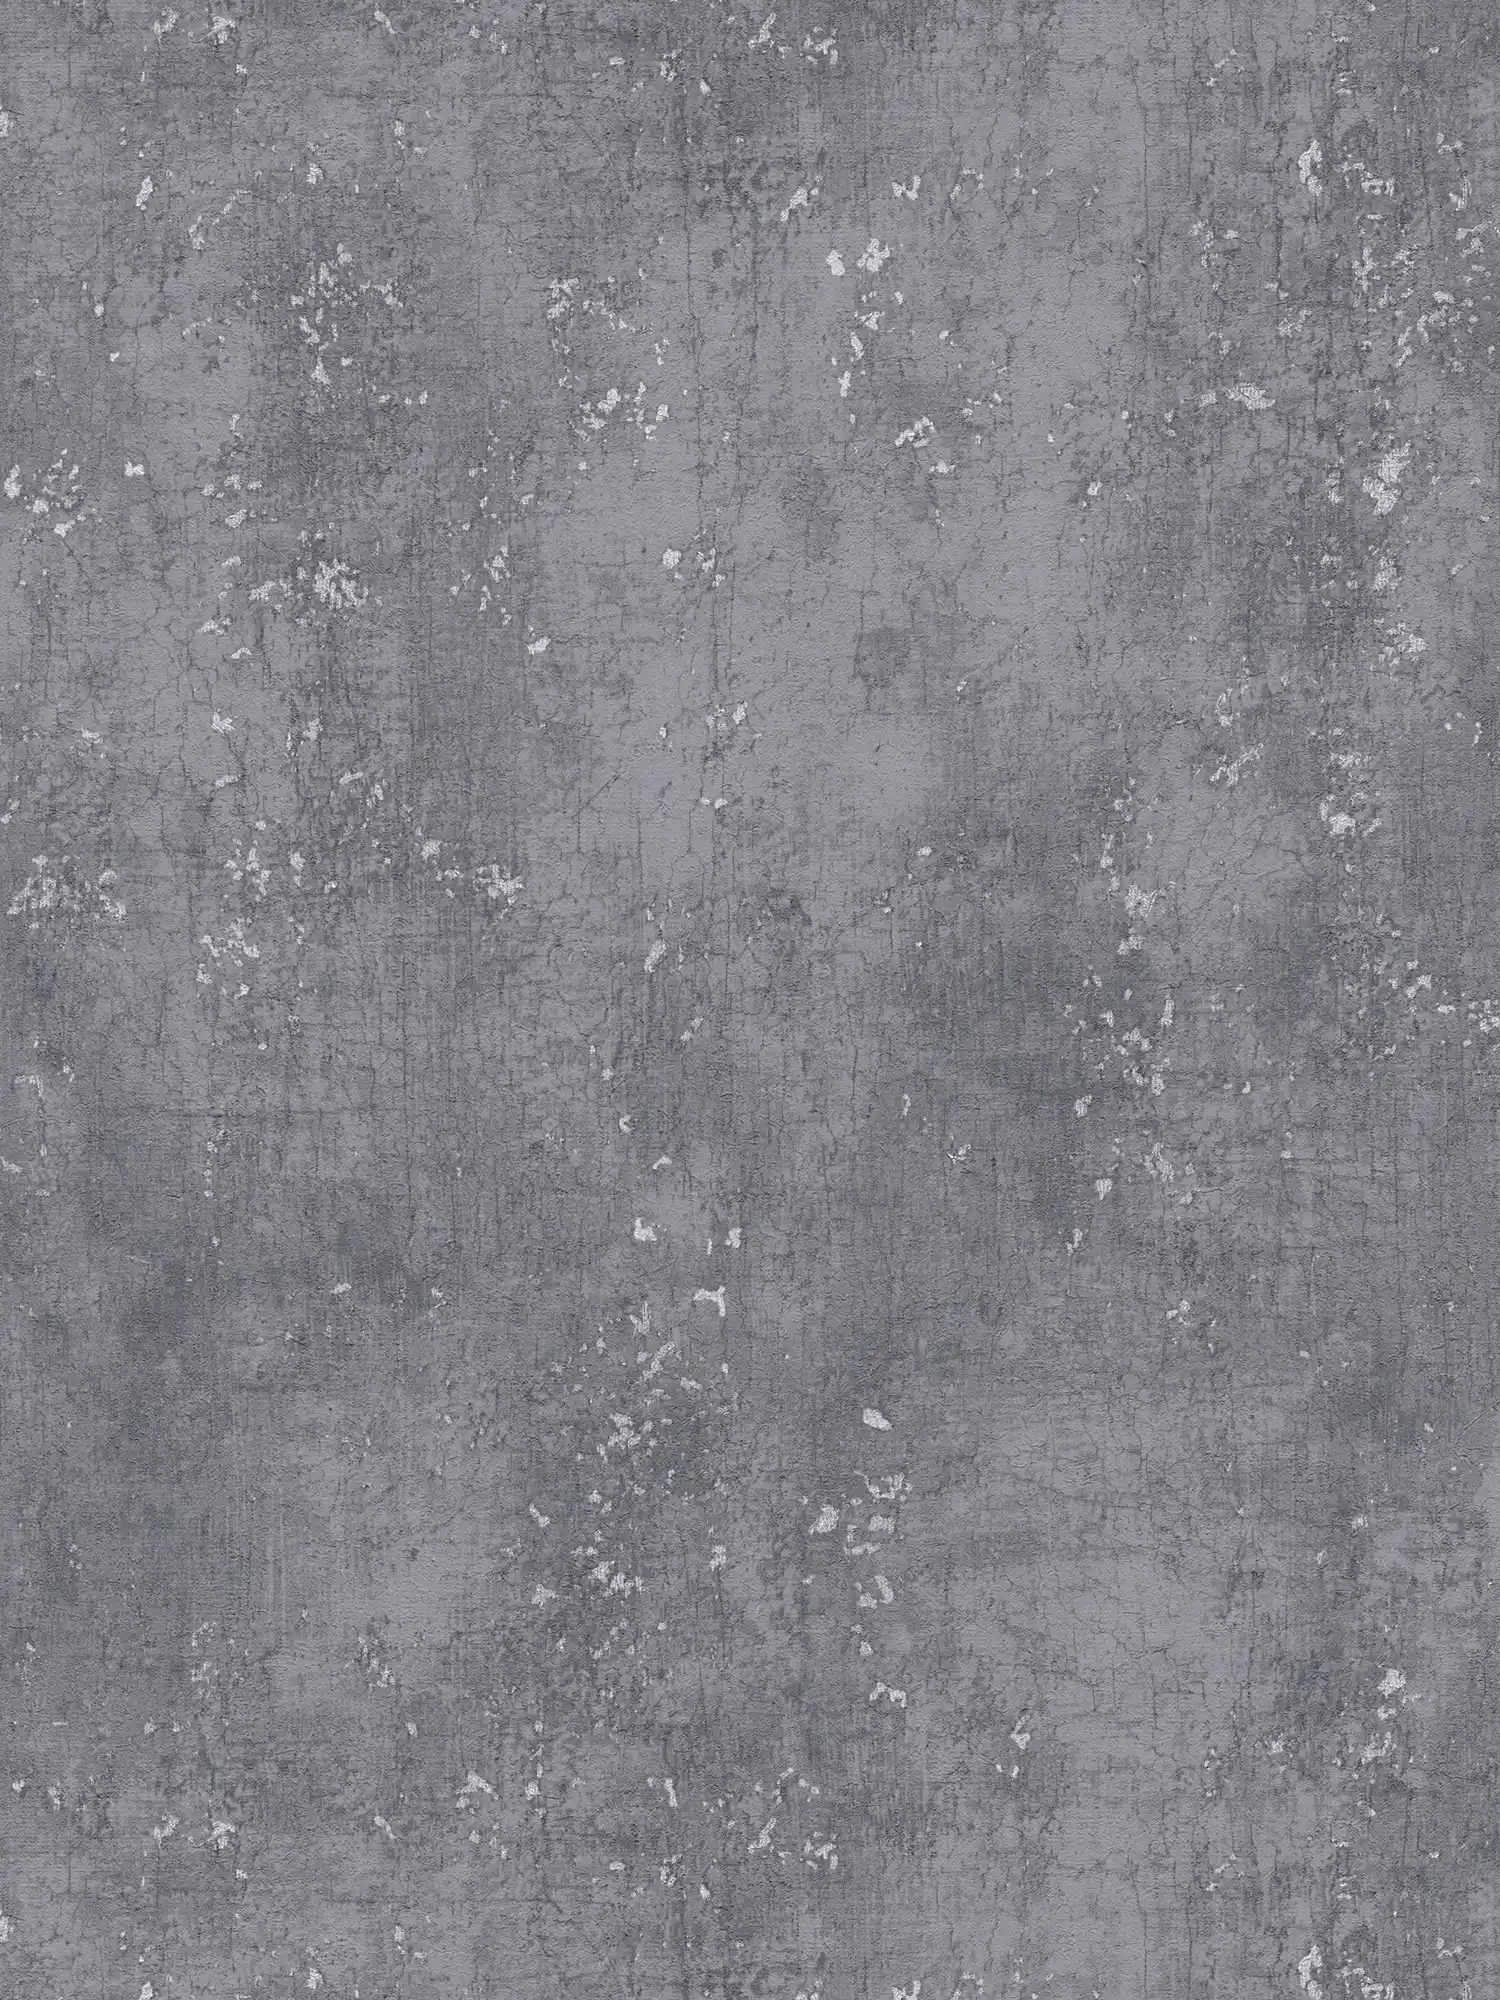         Papel pintado gris oscuro con aspecto de yeso Udes - gris, metálico
    